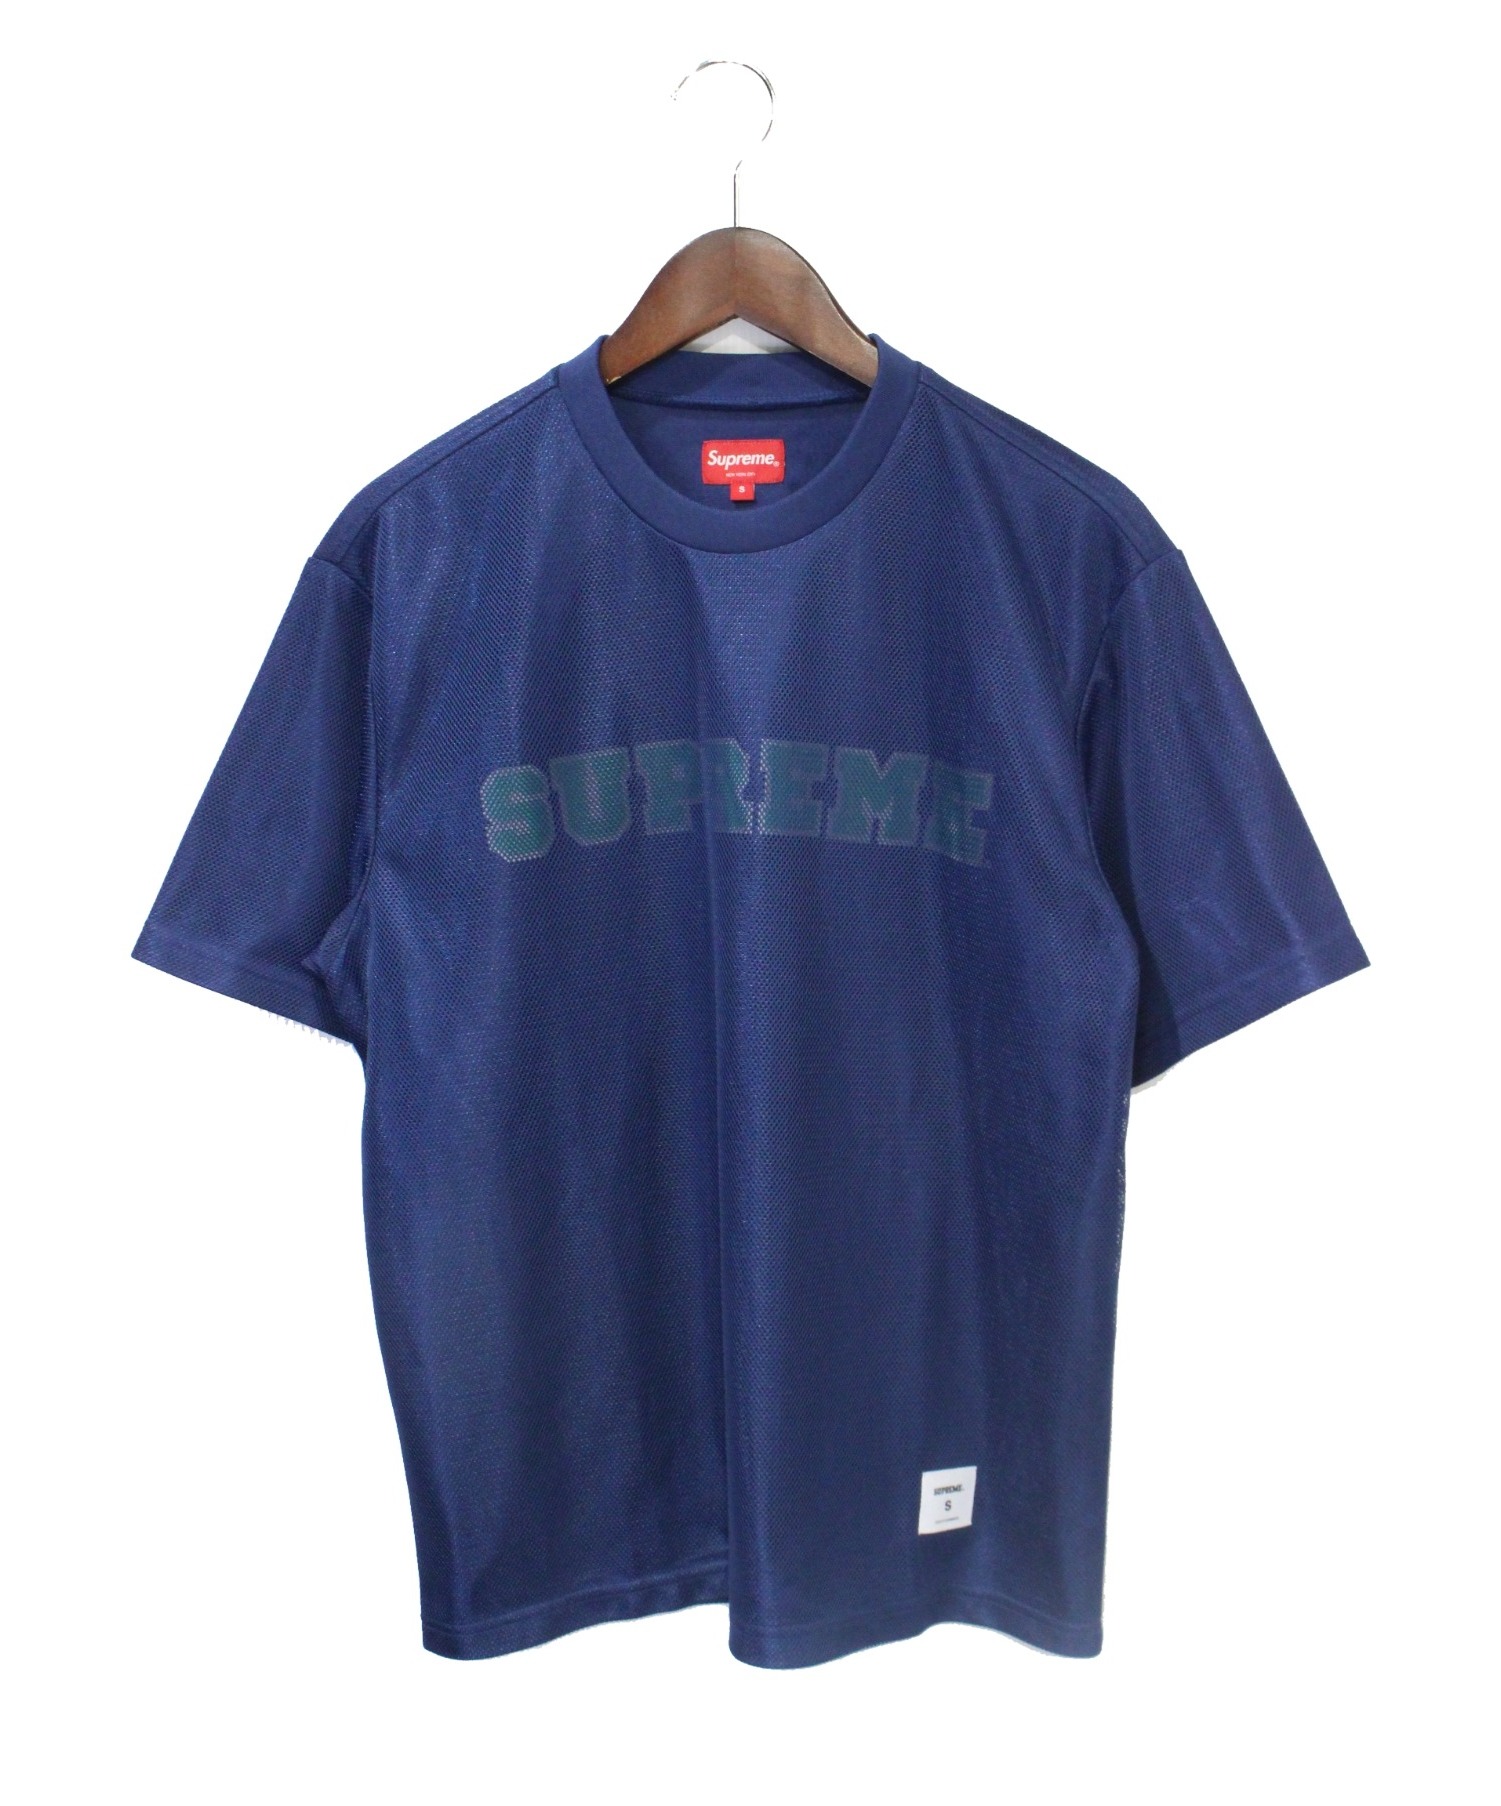 シュプリーム Tシャツ メッシュ グッチカラー 紺 Navy Sサイズ-